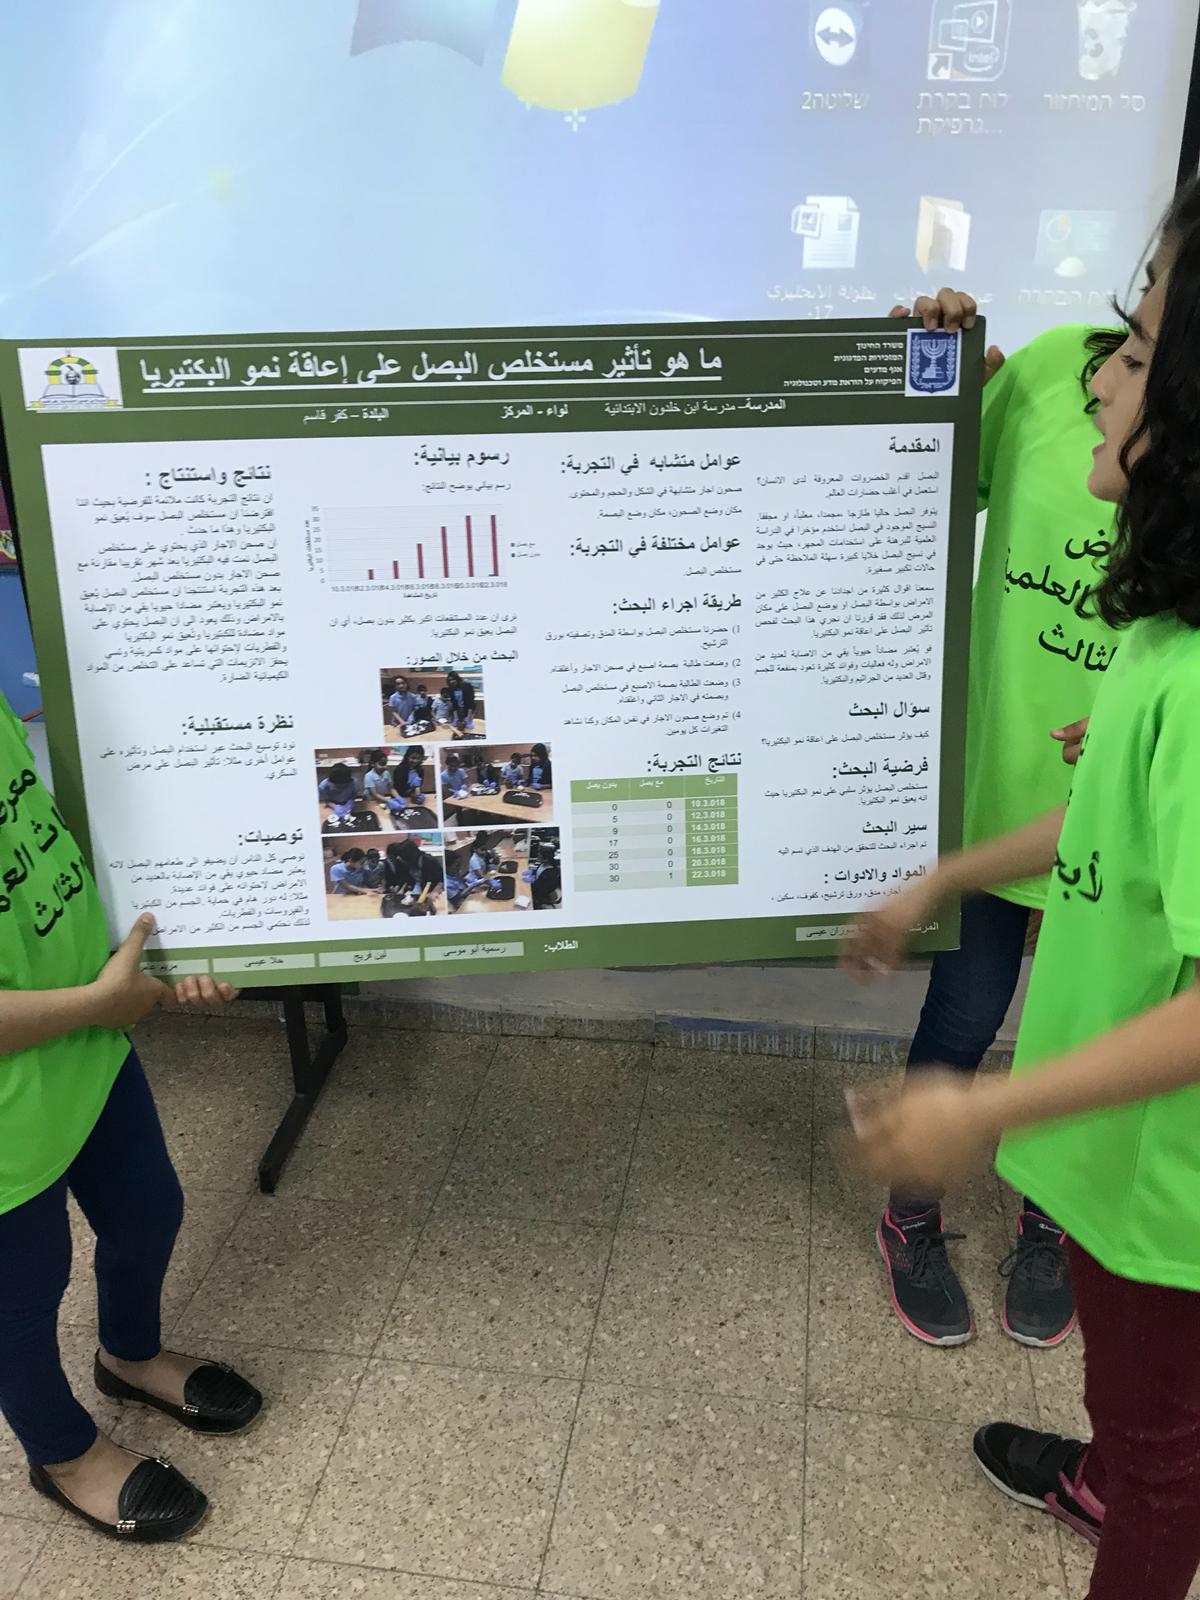 معرض الأبحاث العلمية الثالث على التوالي في مدرسة ابن خلدون الابتدائية كفر قاسم 2017-2018